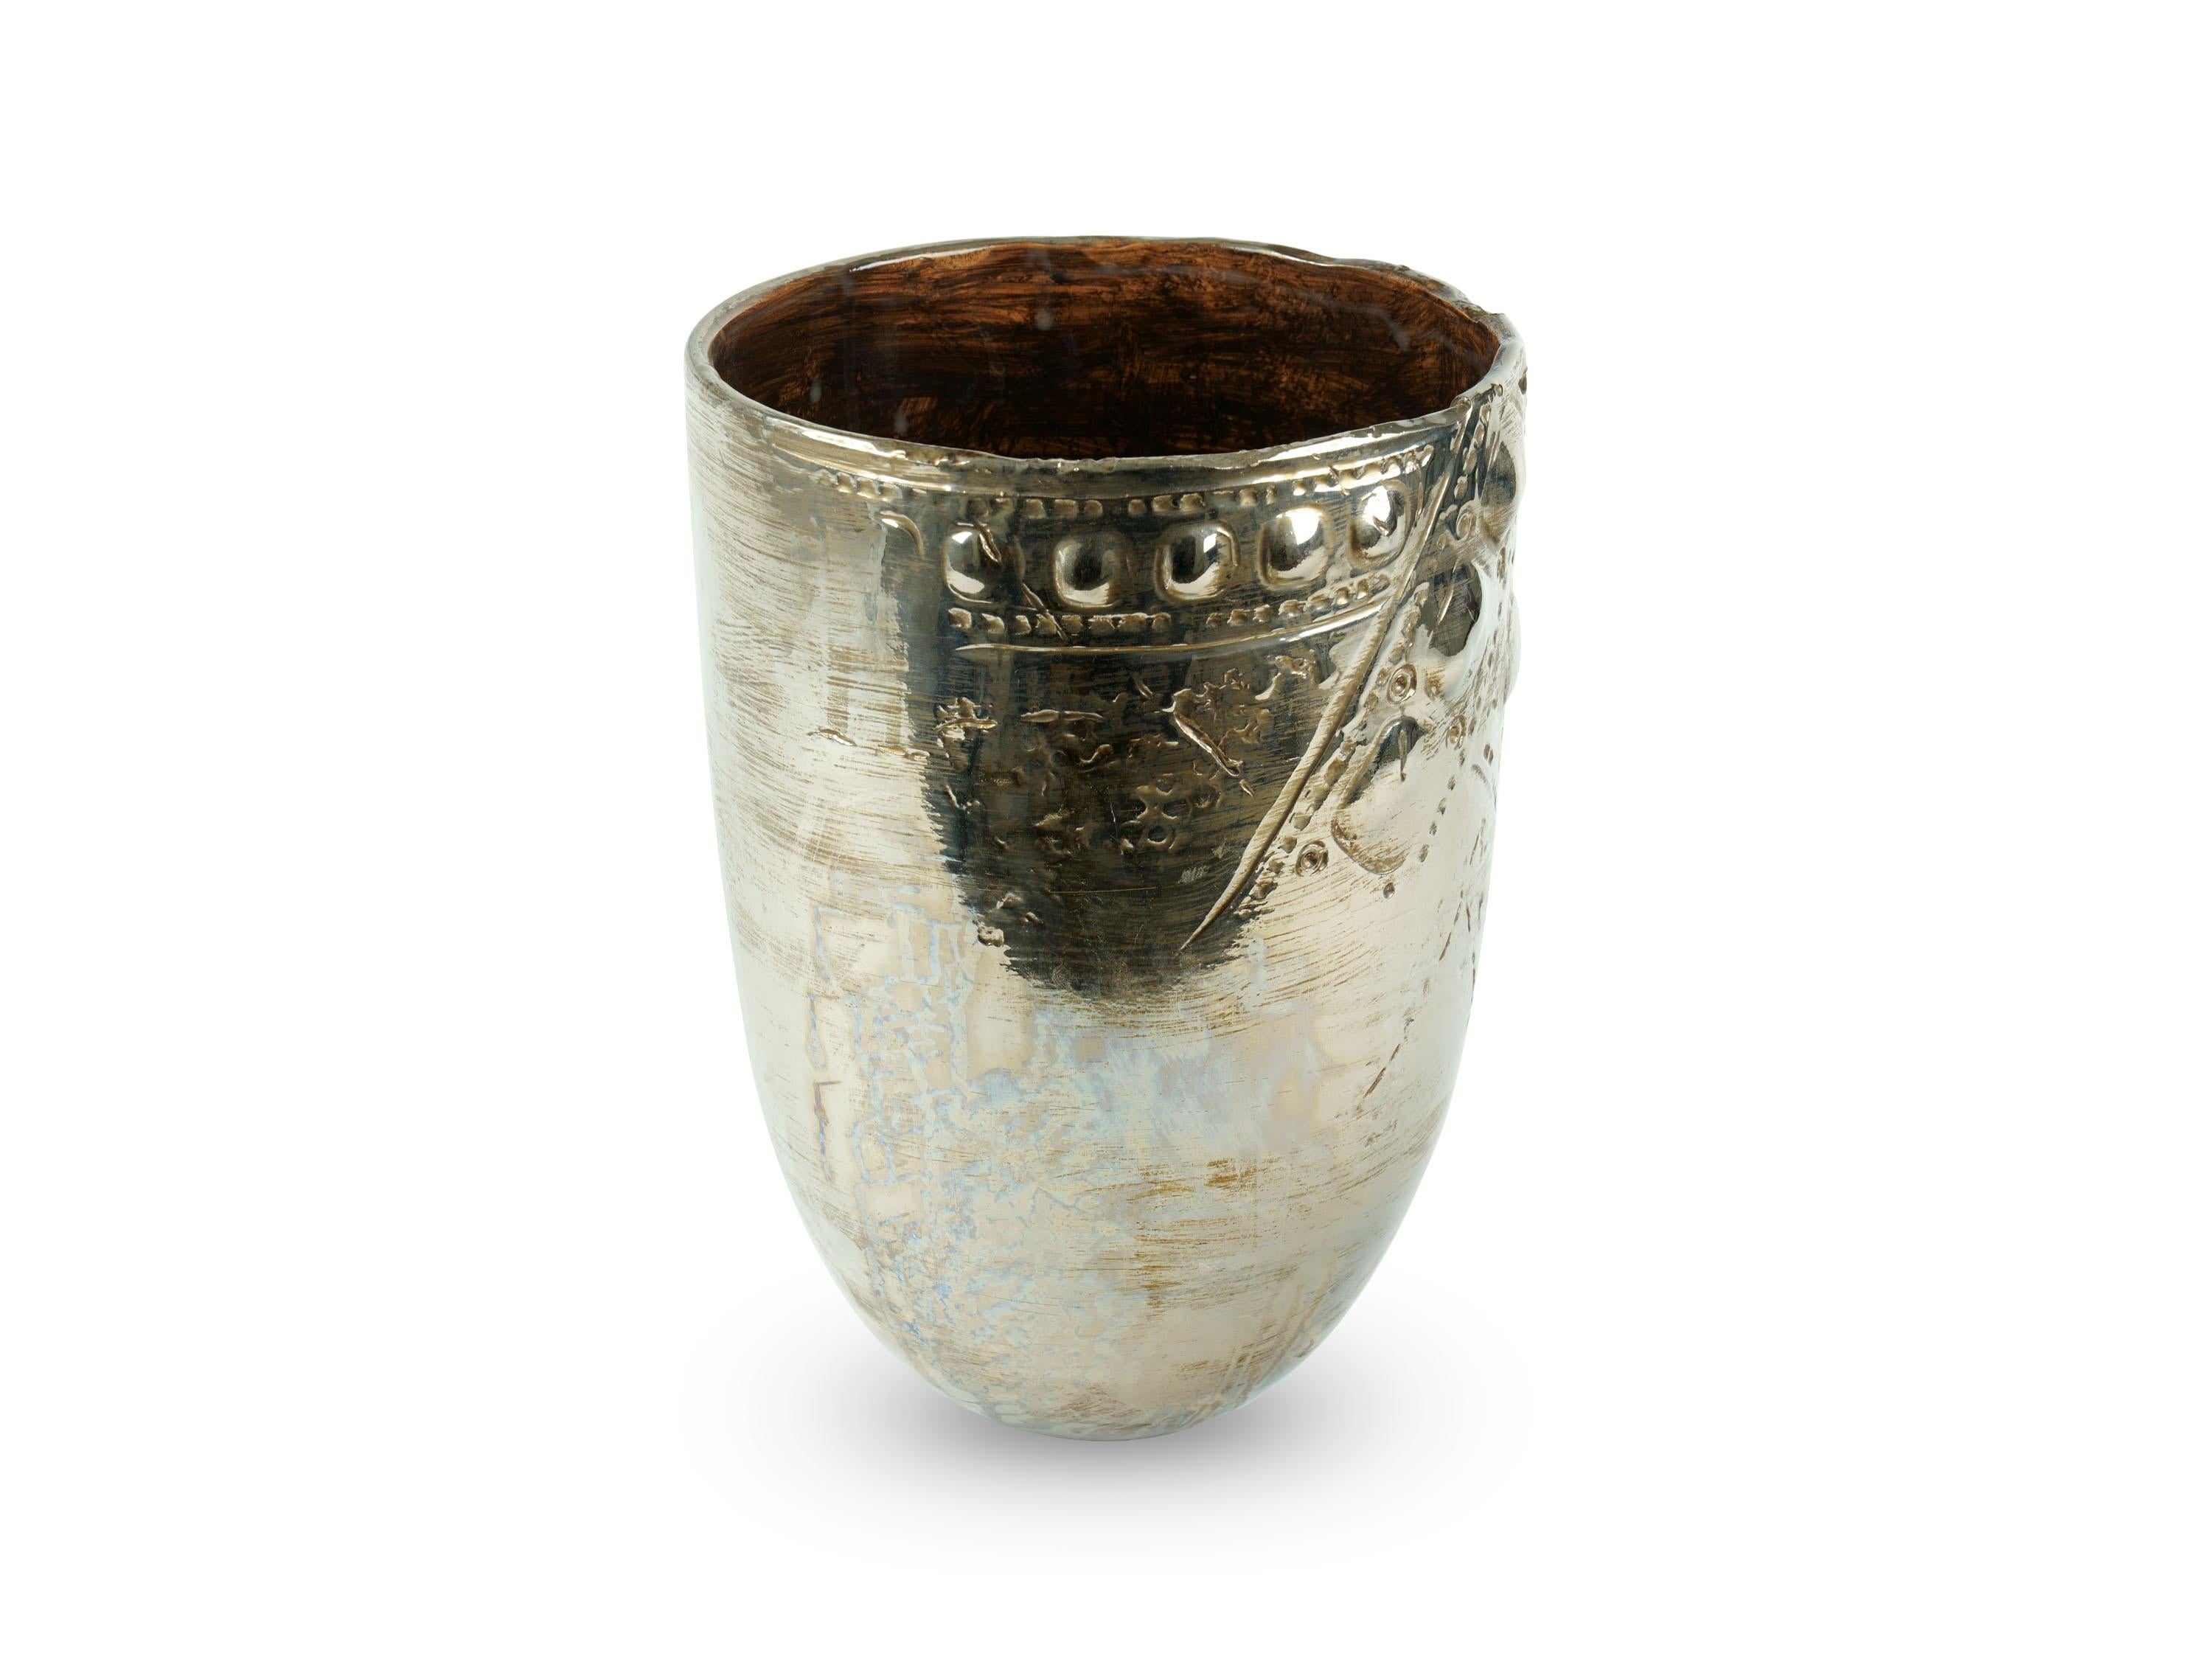 Italian Decorative Ceramic Vase Vessel Metallic Platinum Luster Antiqued Handmade Italy For Sale